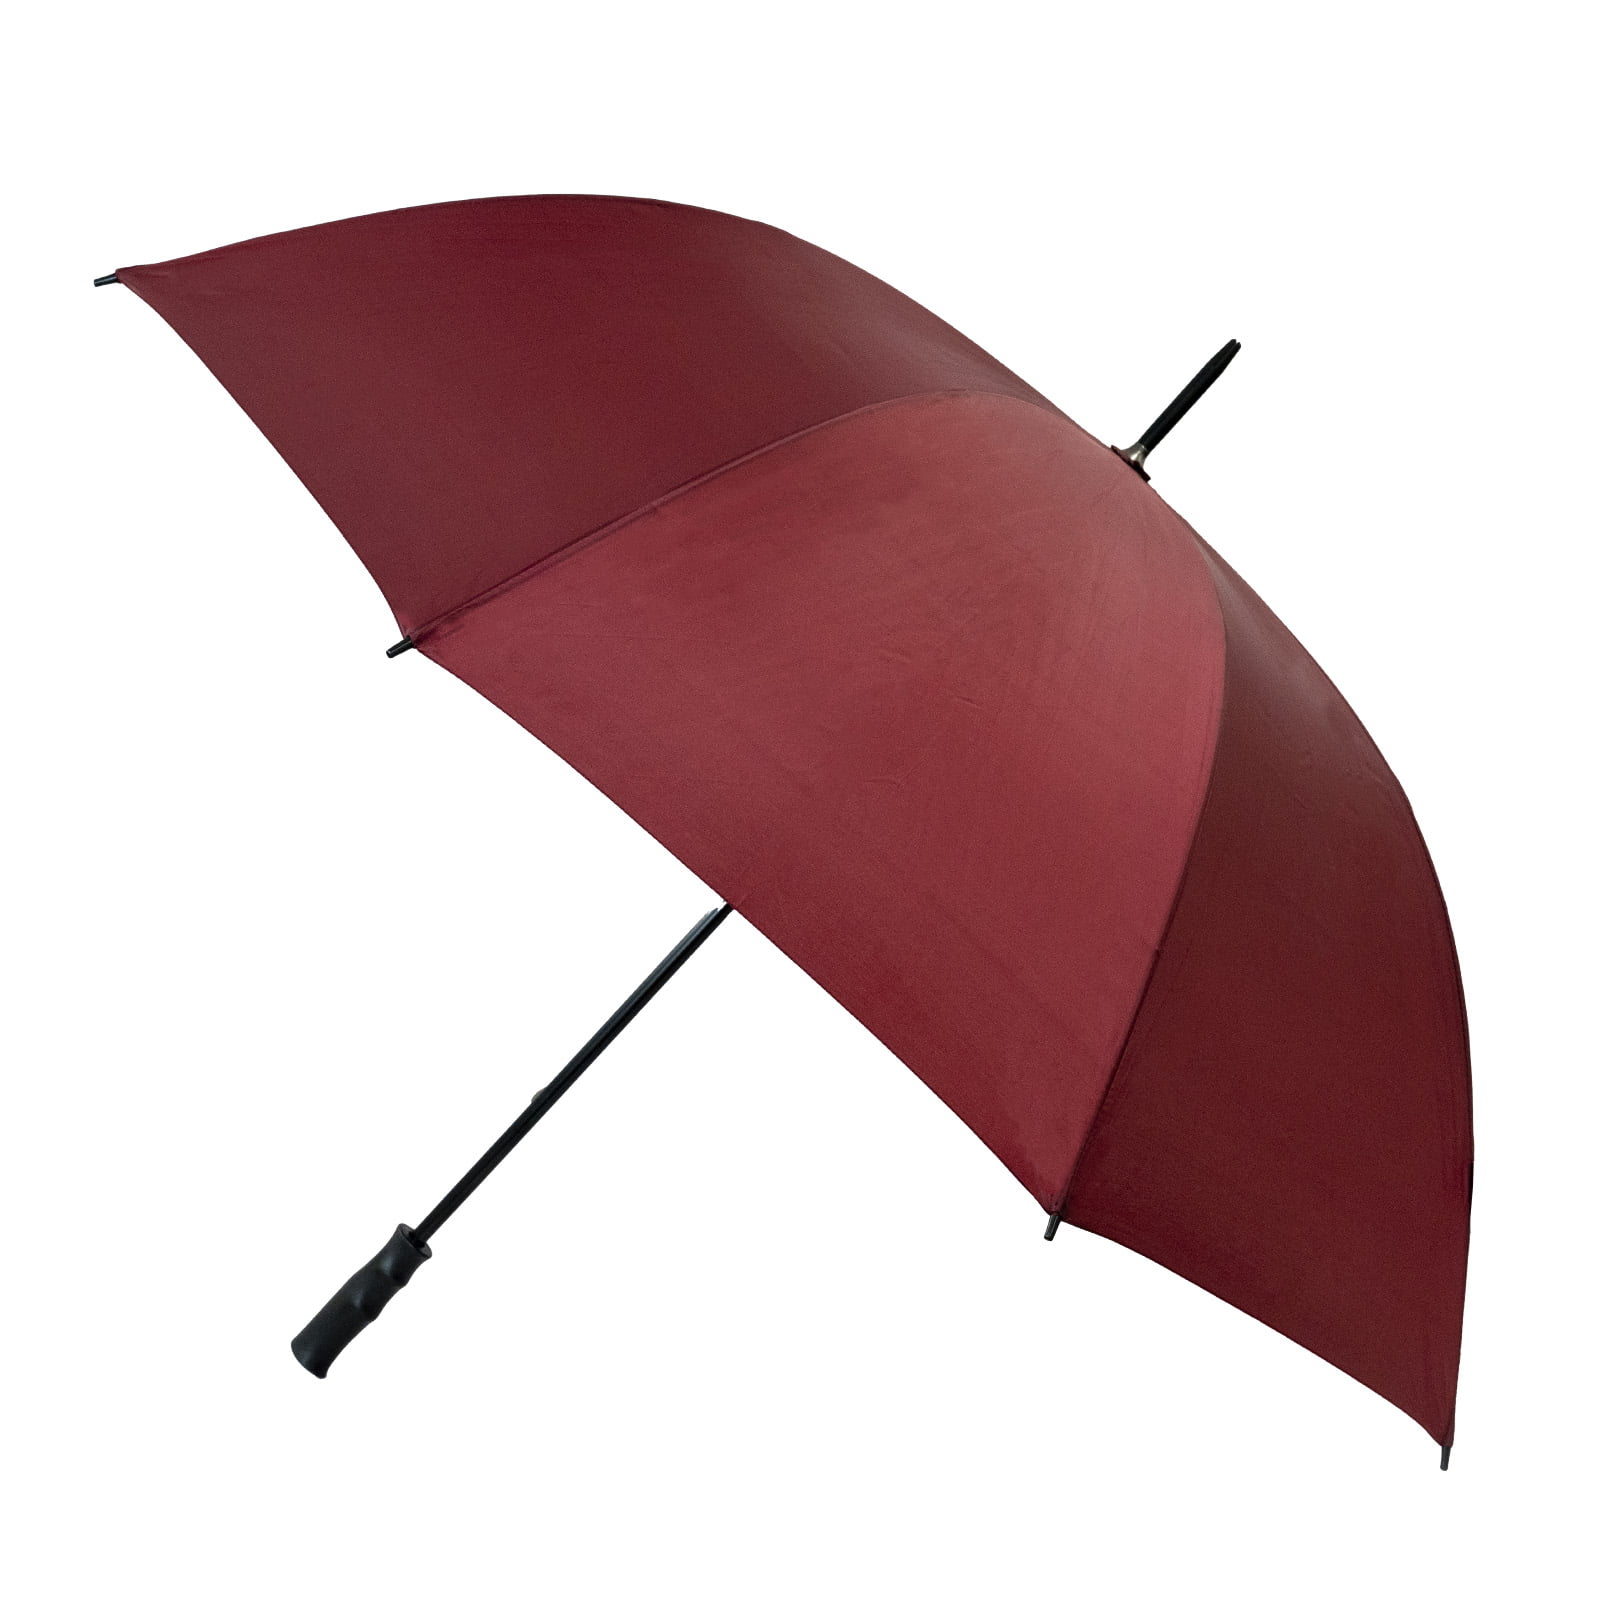 Maroon Budget Golf Umbrella open